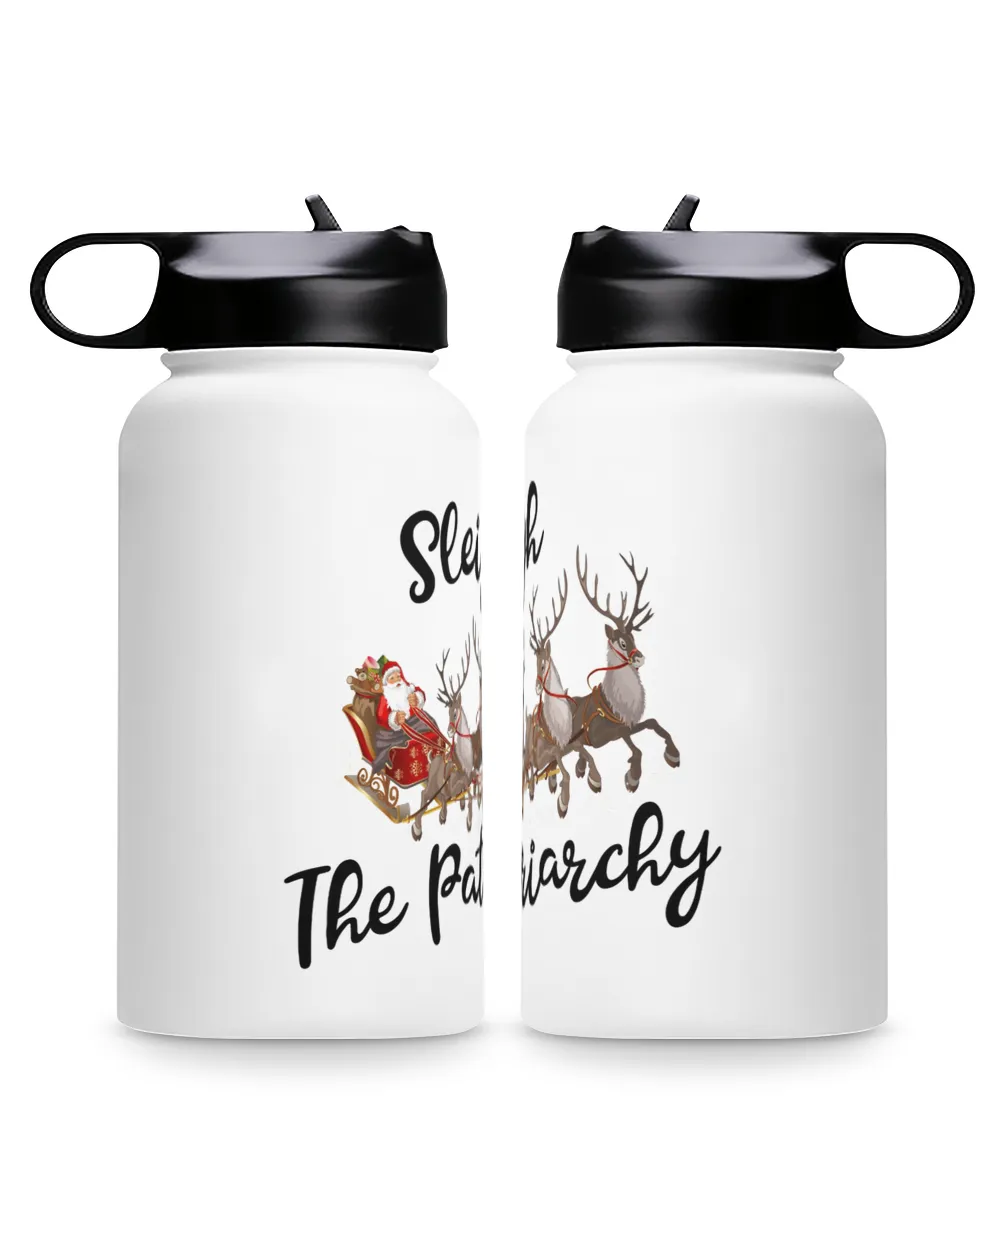 Sleigh The Patriarehy Premium Water Bottle, Santa Claus rides a reindeer sleigh